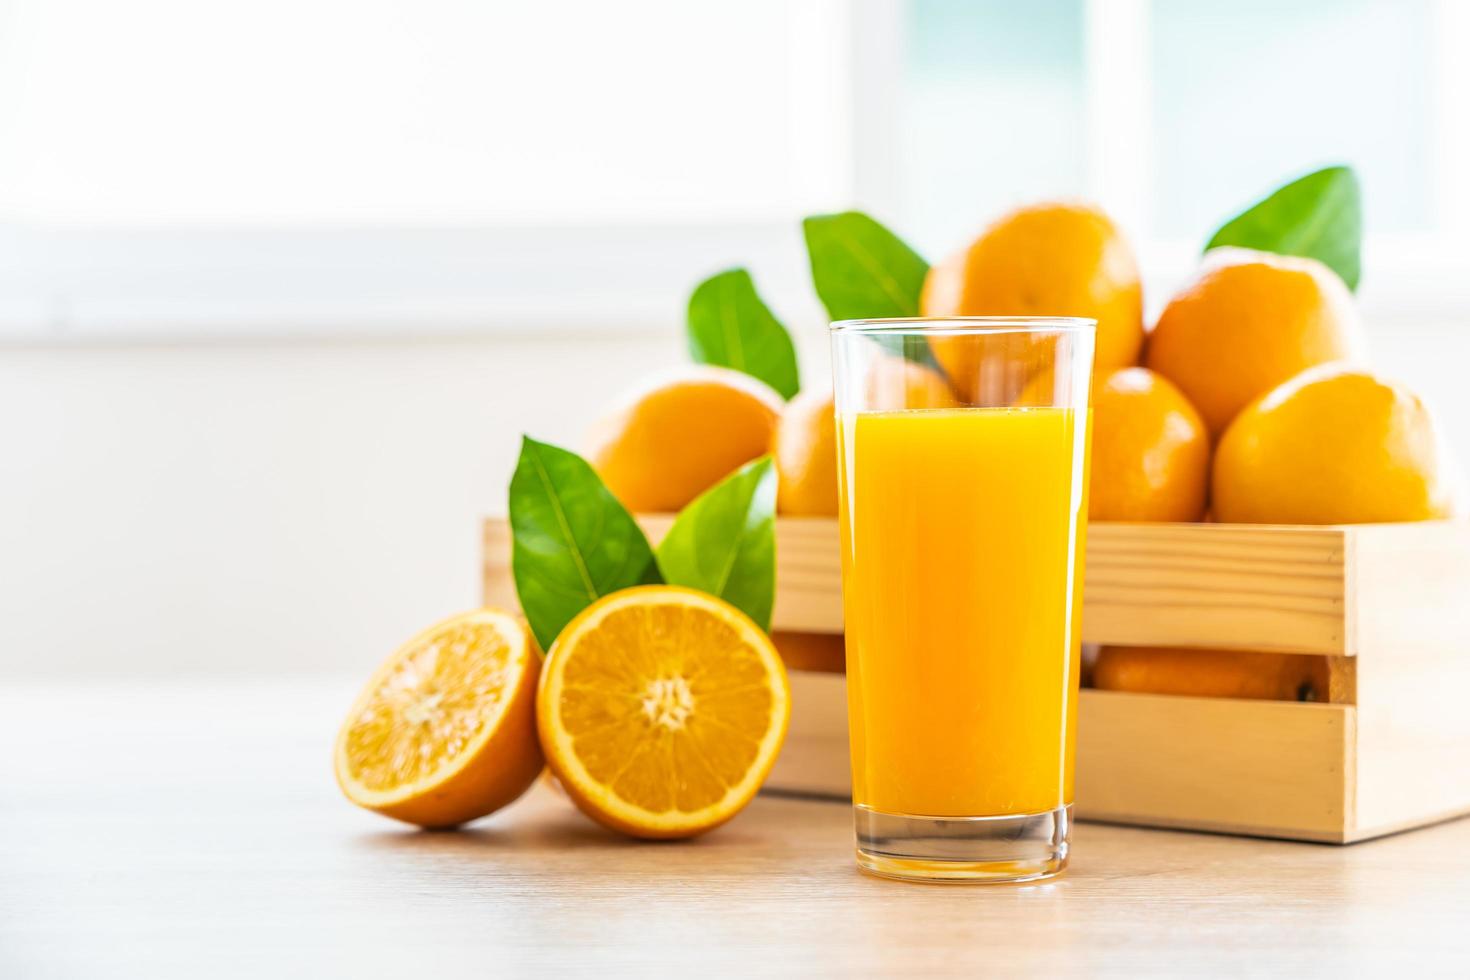 frischer Orangensaft zum Trinken in Flaschenglas foto